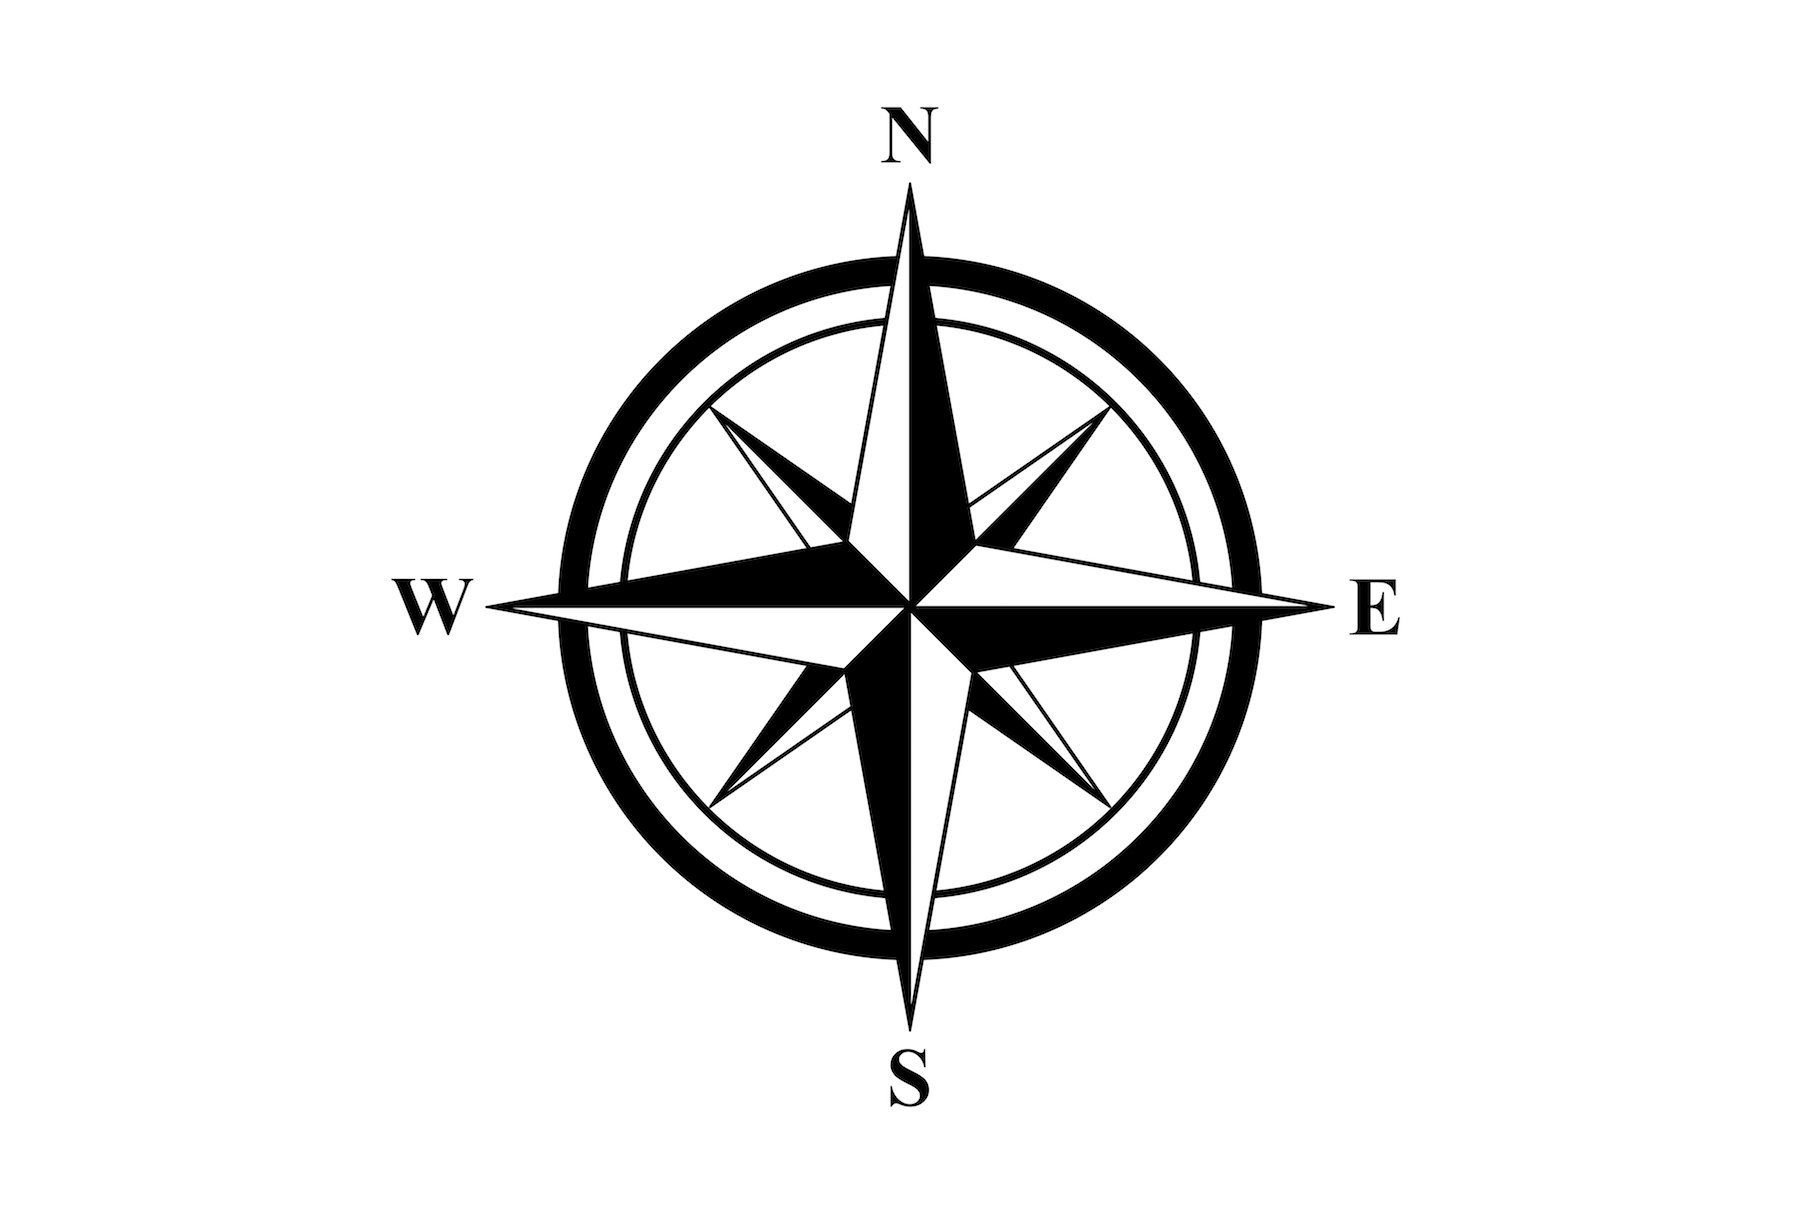 Обозначение севера на компасе